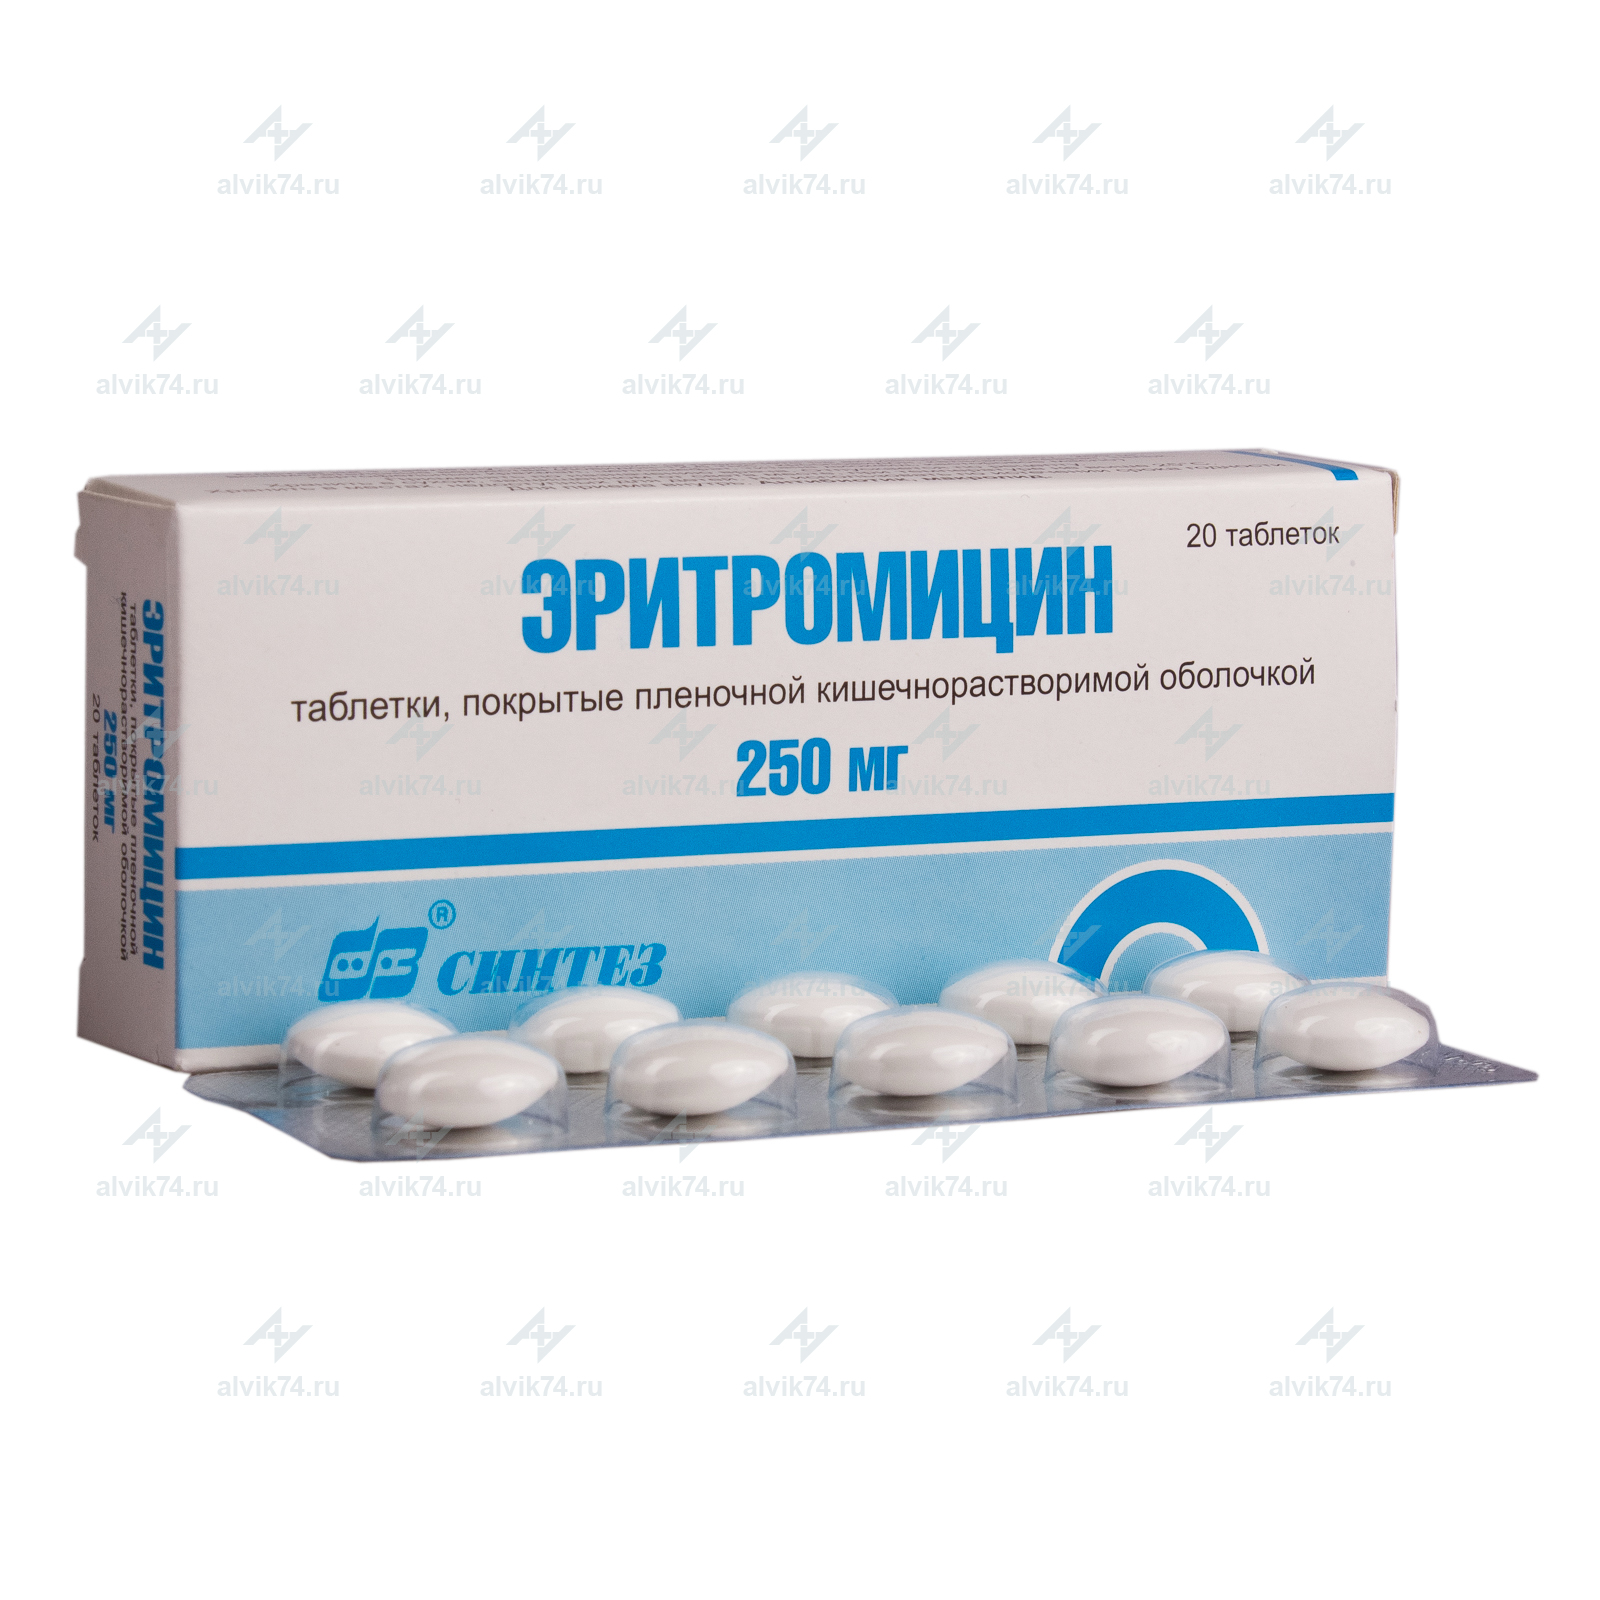 Эритромицин пенициллин